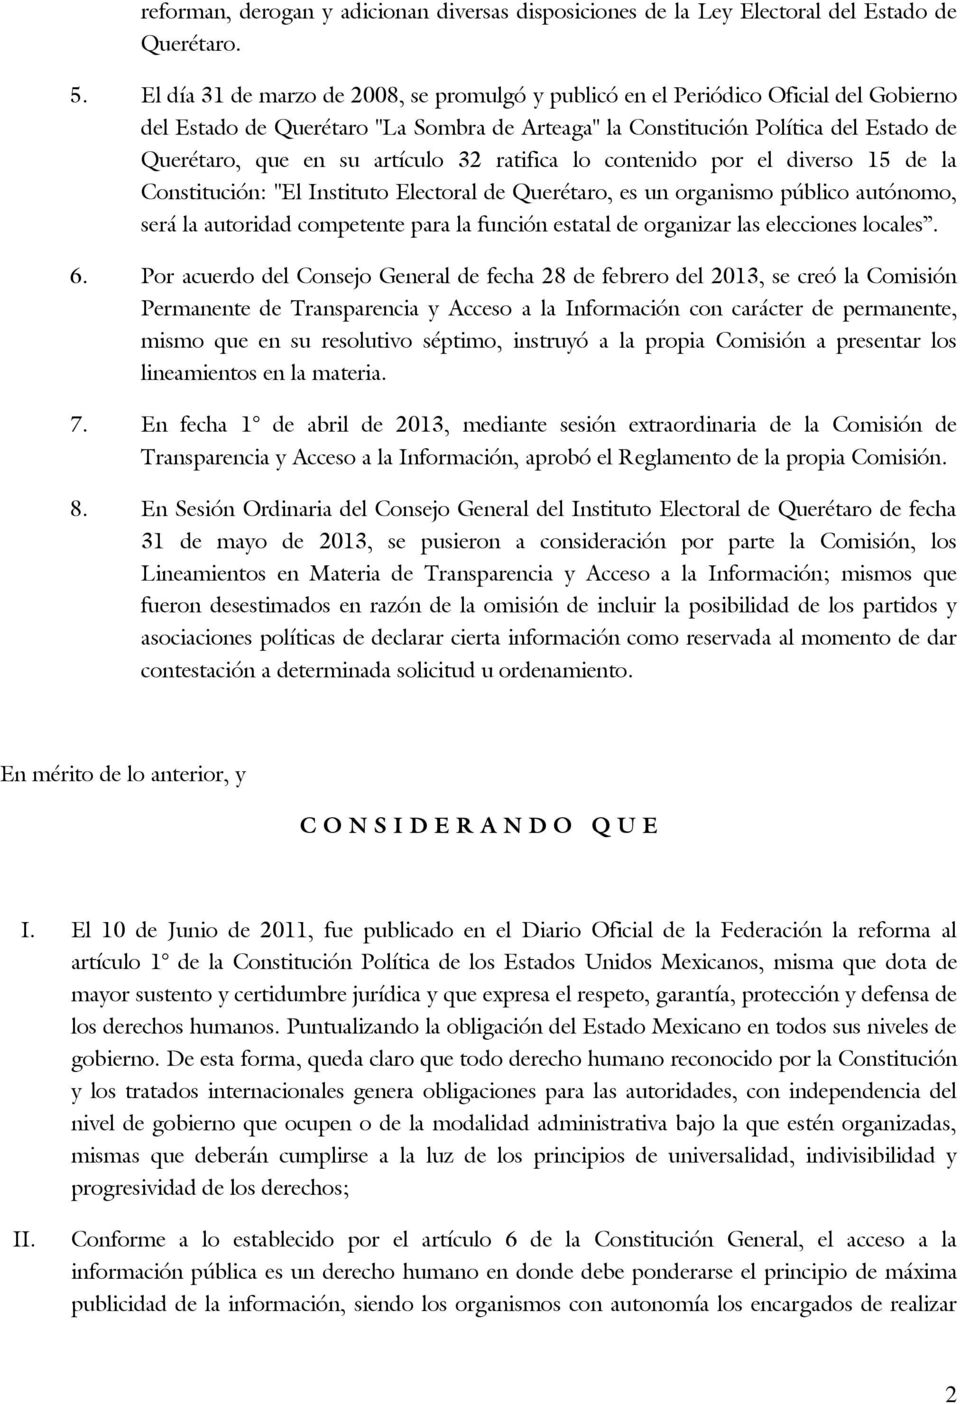 artículo 32 ratifica lo contenido por el diverso 15 de la Constitución: "El Instituto Electoral de Querétaro, es un organismo público autónomo, será la autoridad competente para la función estatal de